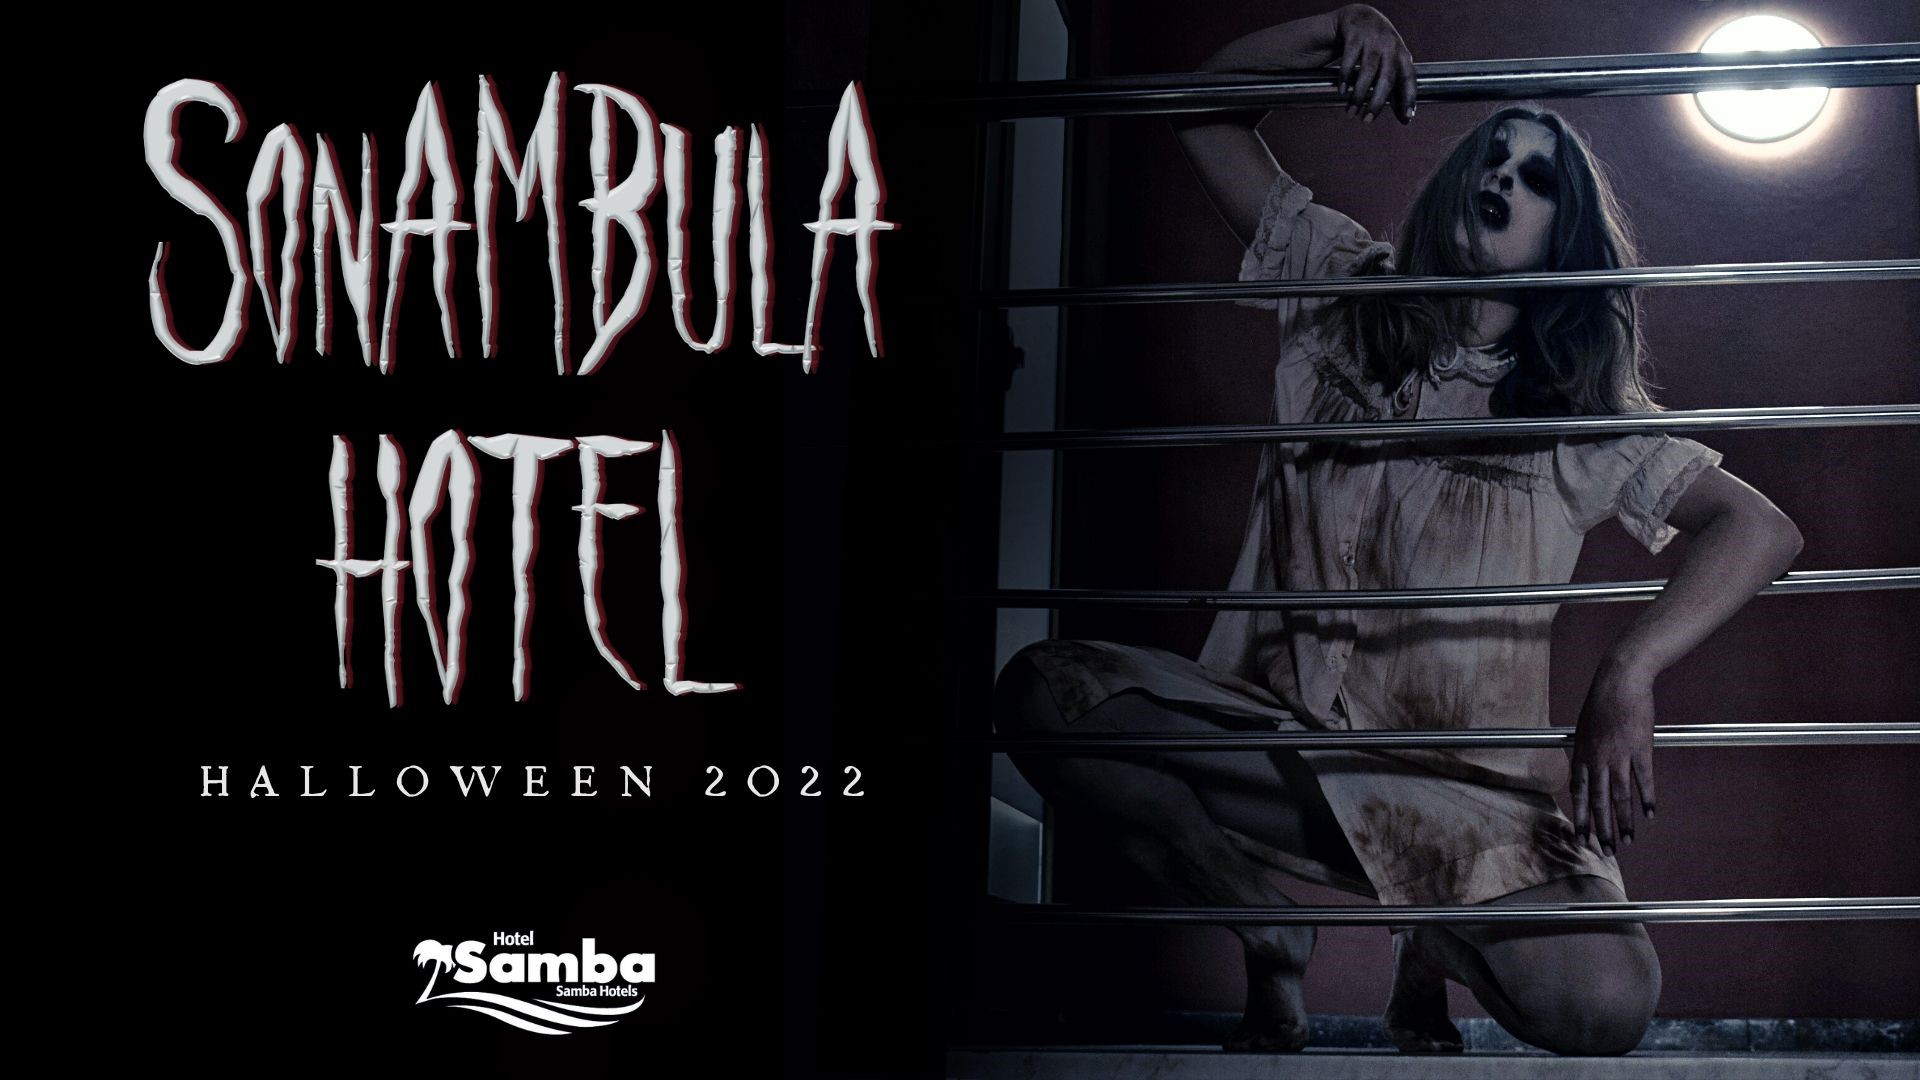 ¡Bienvenidos al Sonambula Hotel!